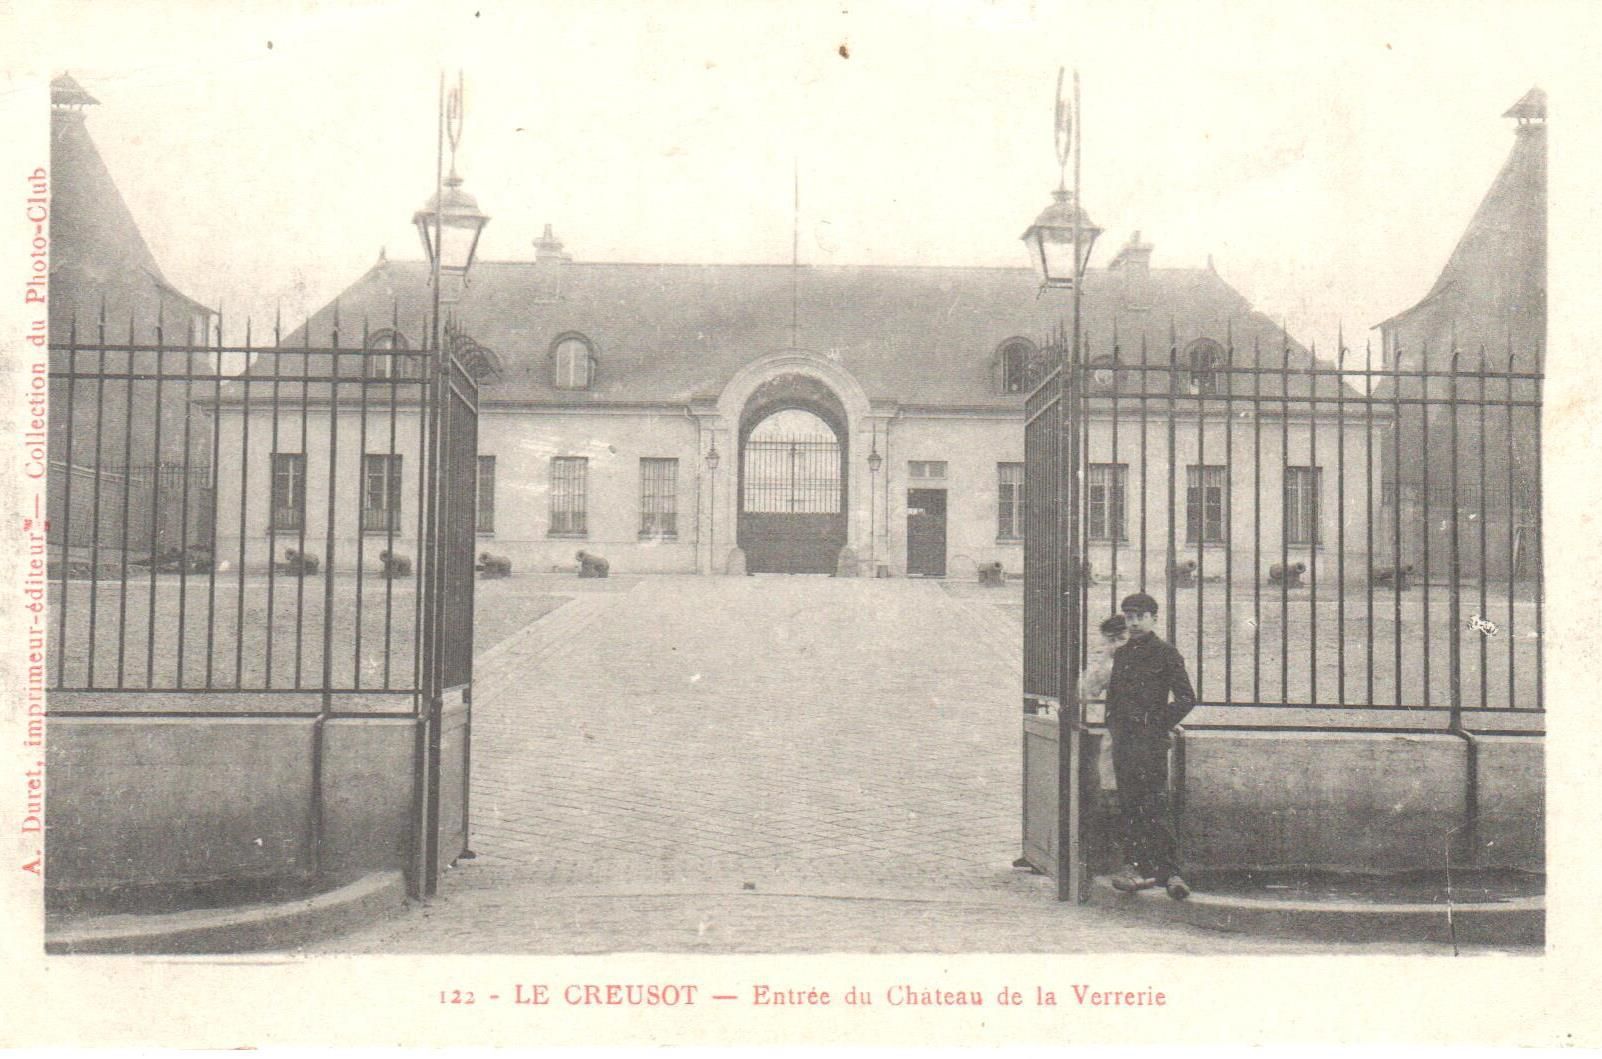 Le Creusot. Entrée du Château de la Verrerie. Carte postale mise en circulation le 6 novembre 1914. Collection Rochette.